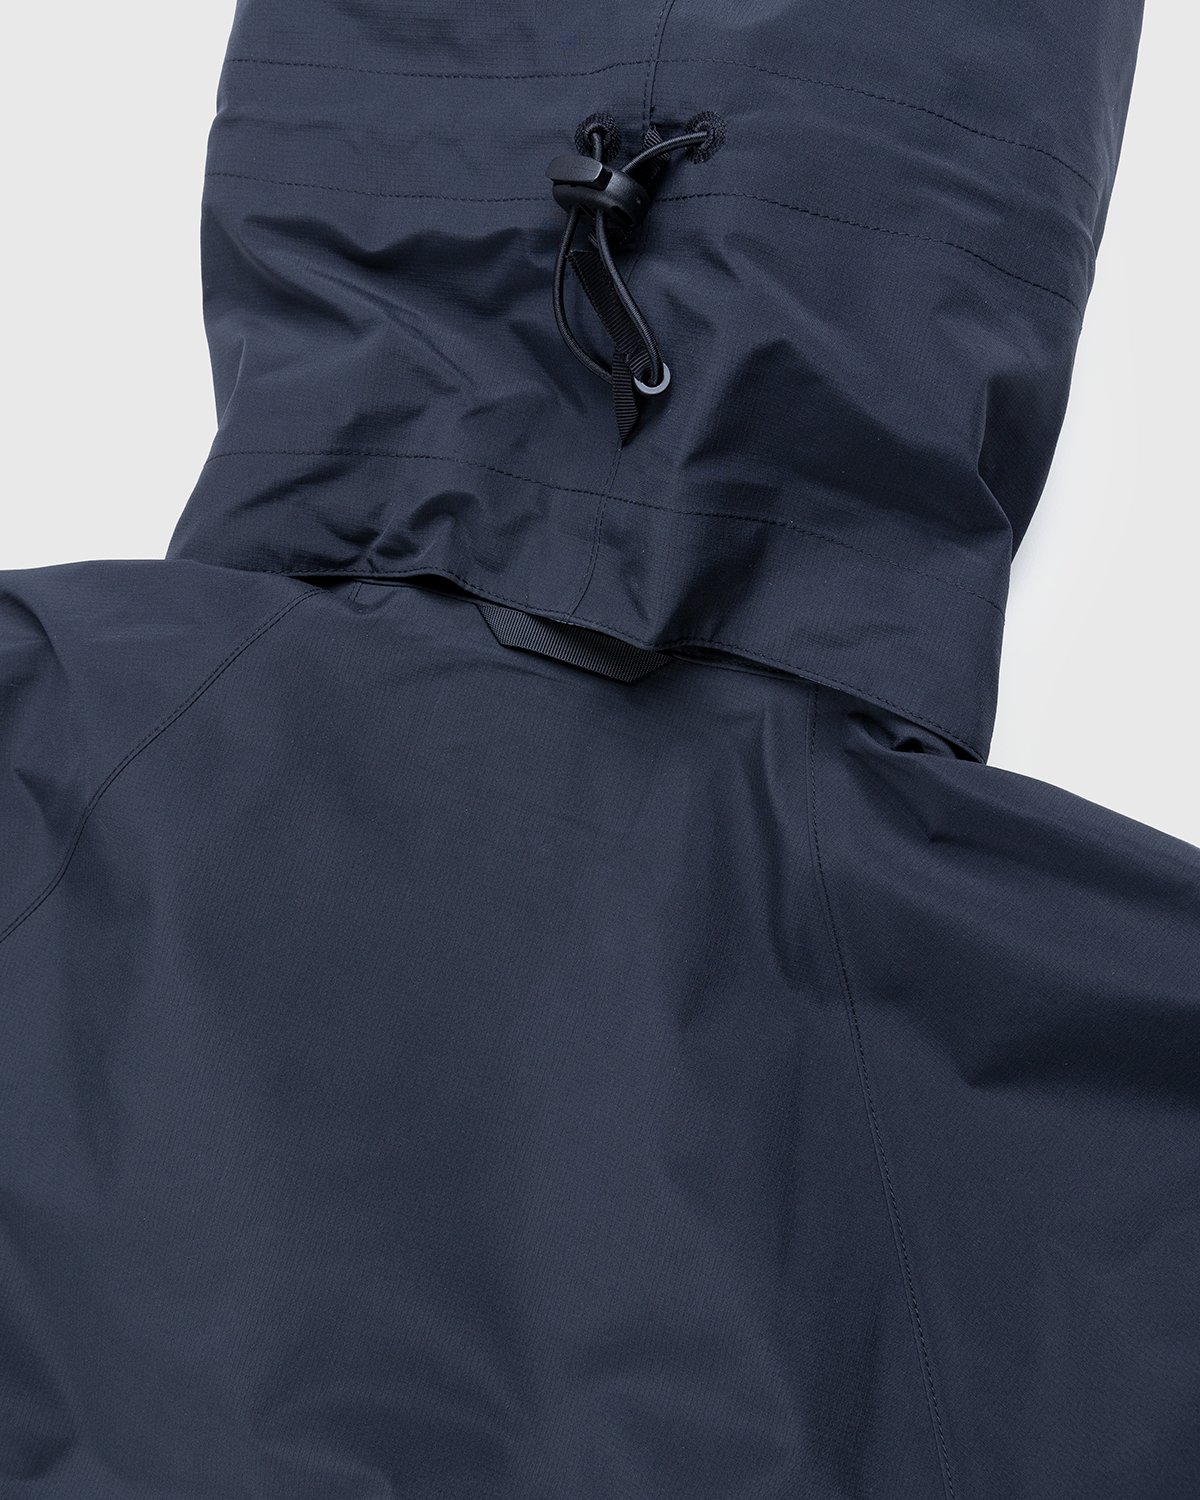 ACRONYM - J96-GT Jacket Black - Clothing - Black - Image 4